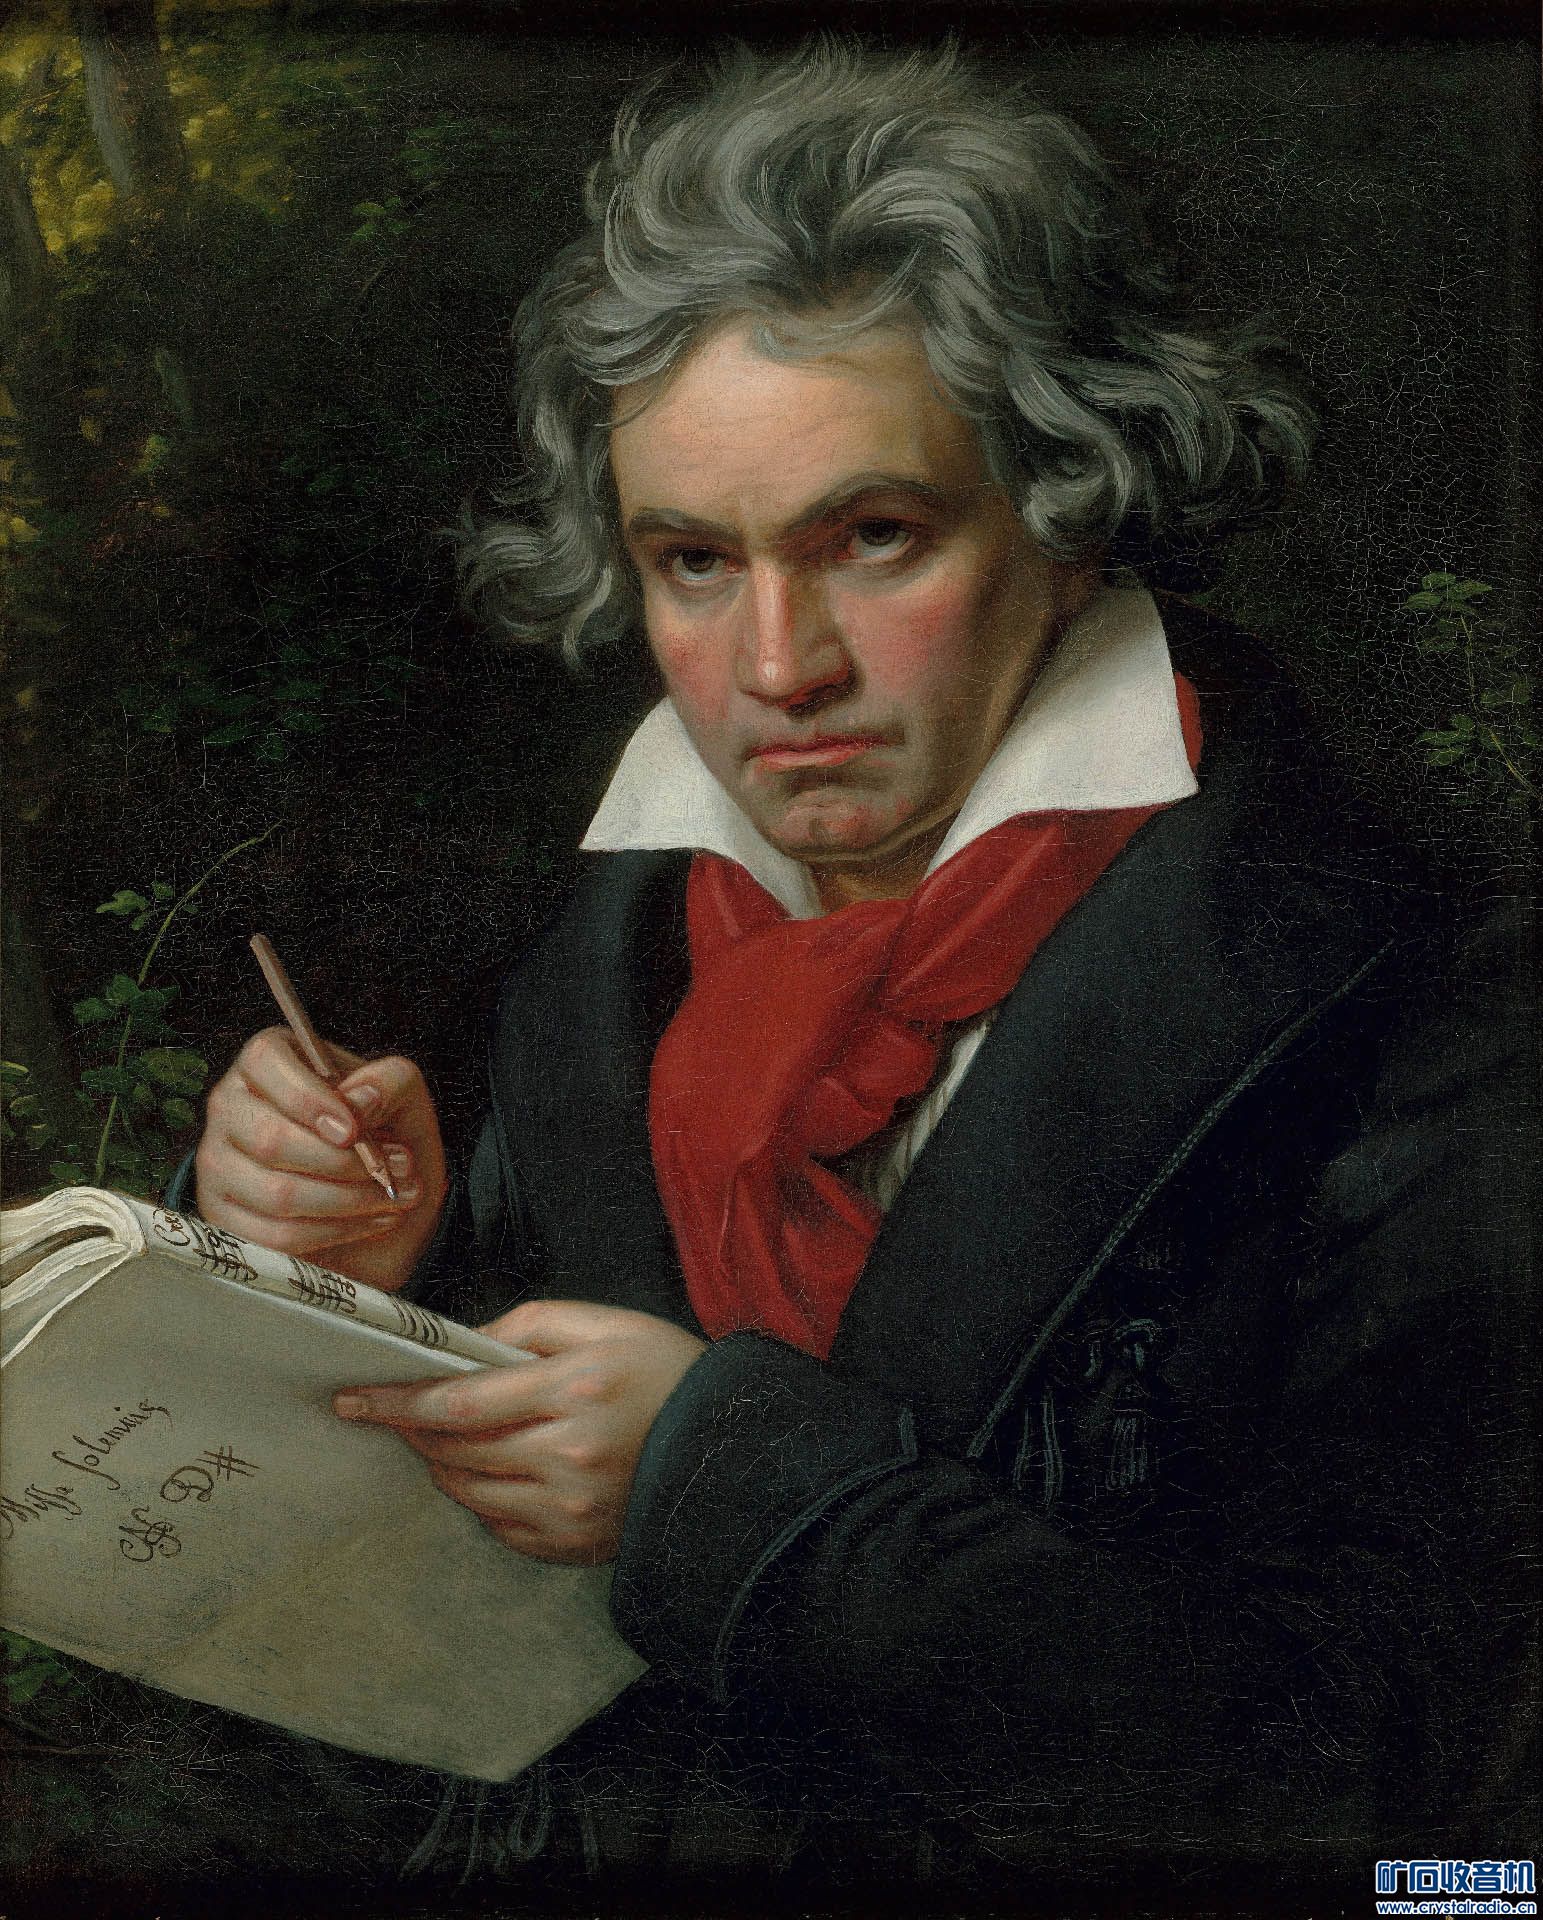 Joseph_Karl_Stieler's_Beethoven_mit_dem_Manuskript_der_Missa_solemnis 1820.jpg